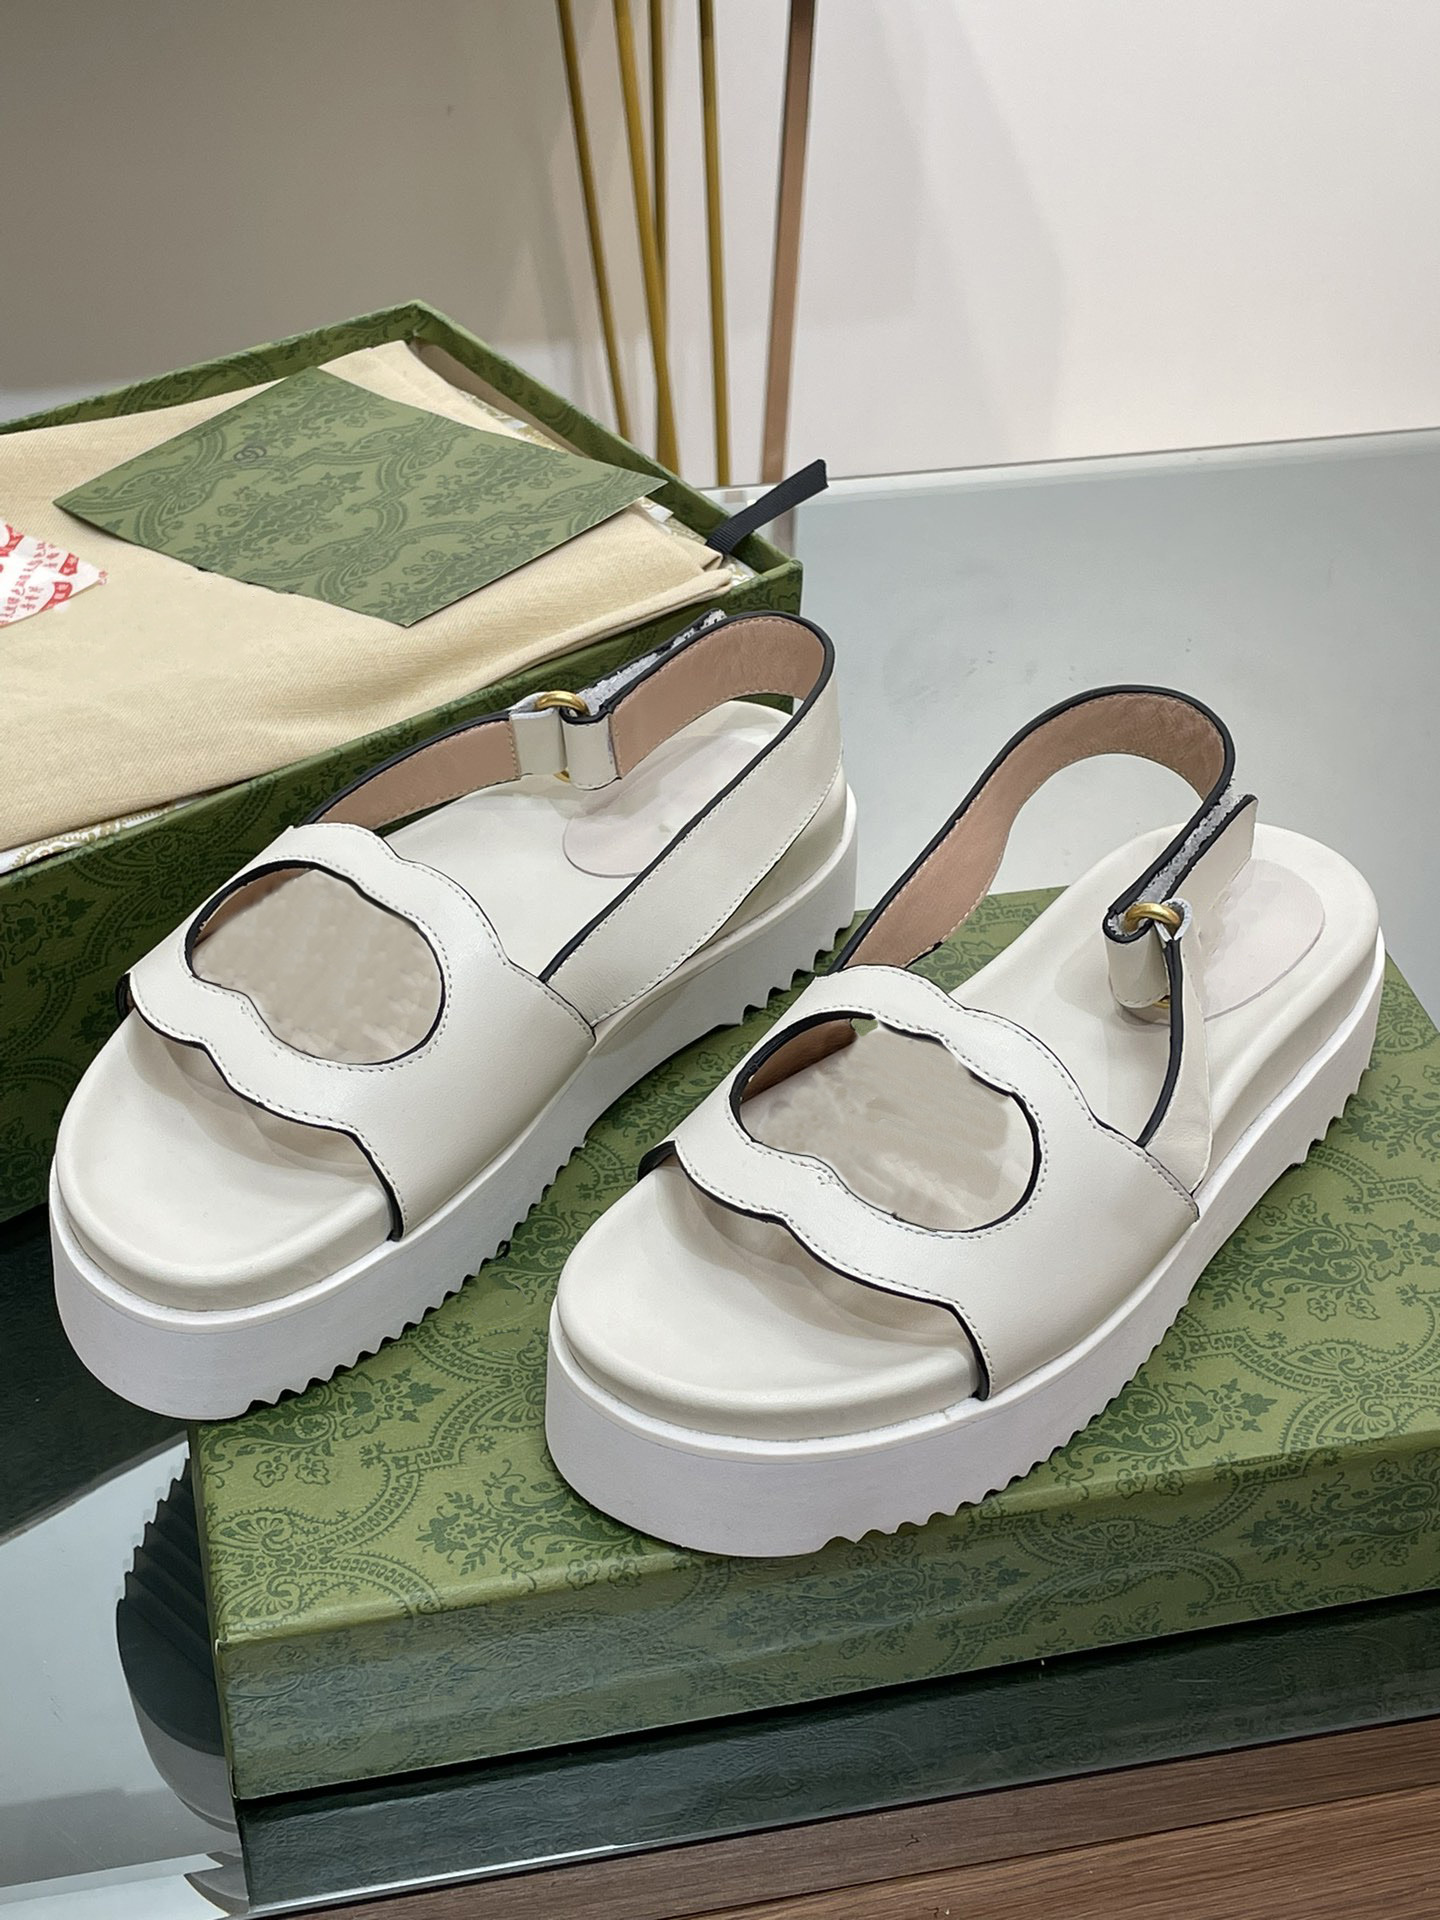 Podwójny g grube sandałowy projektant sandałowy Summer New Woman Pratture Double G platforma sandałowa moda luksusowa krowica gumowa pojedyncza rzymskie klapki puste sandały literowe